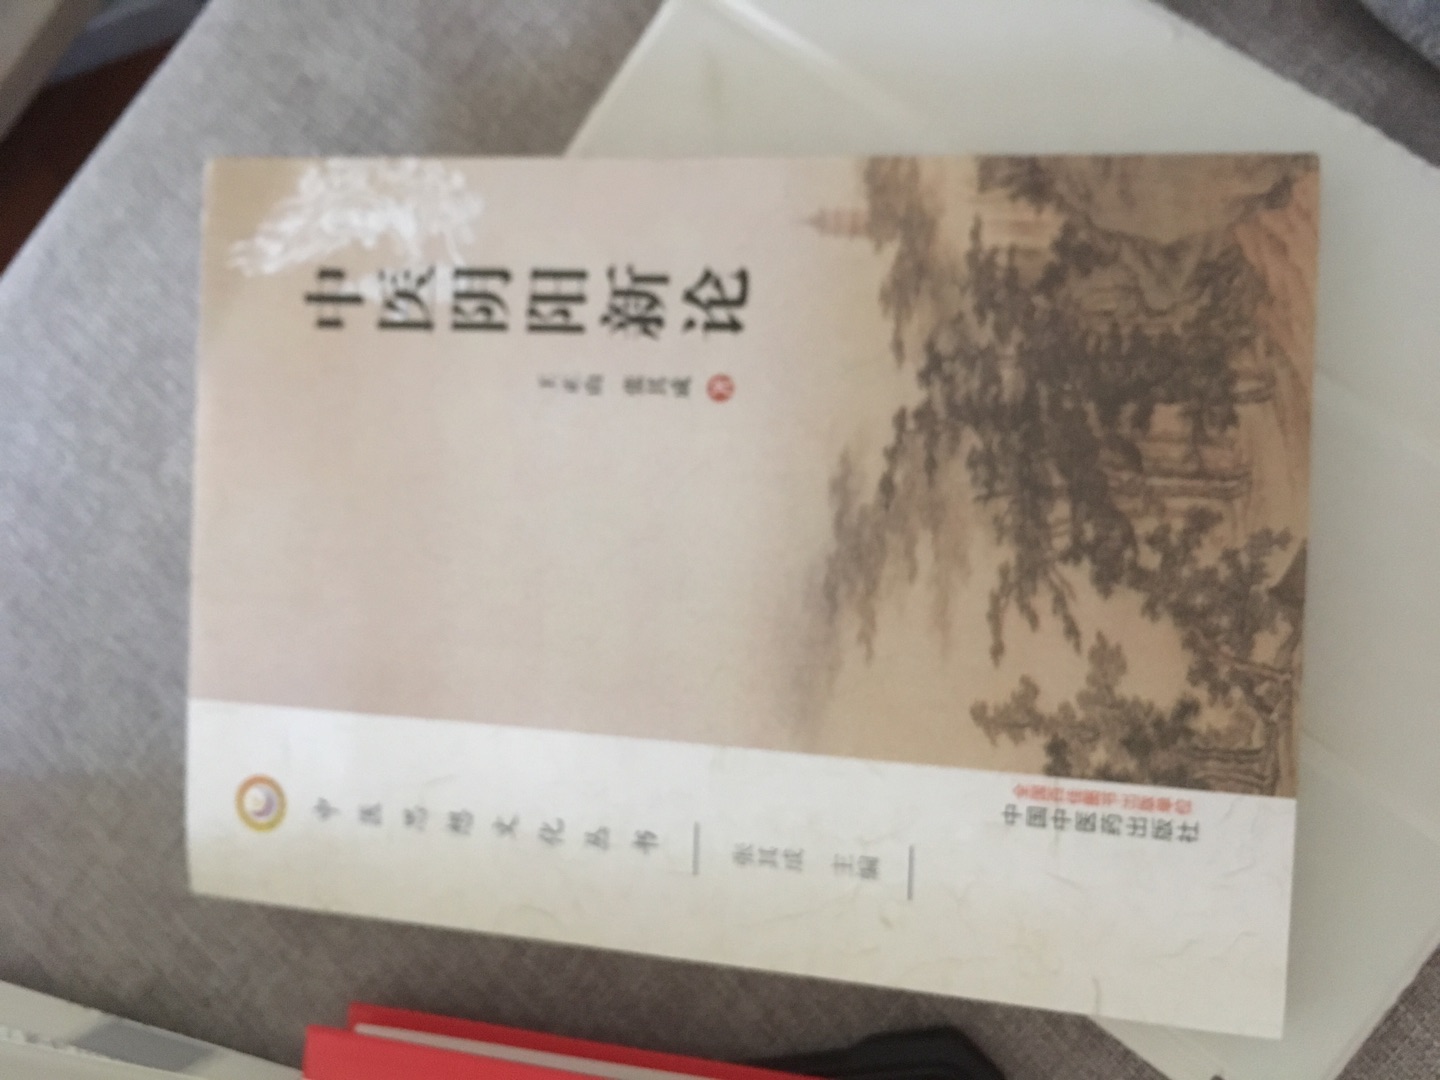 有这本书就可以很好去看繁体中文版的作品啦！